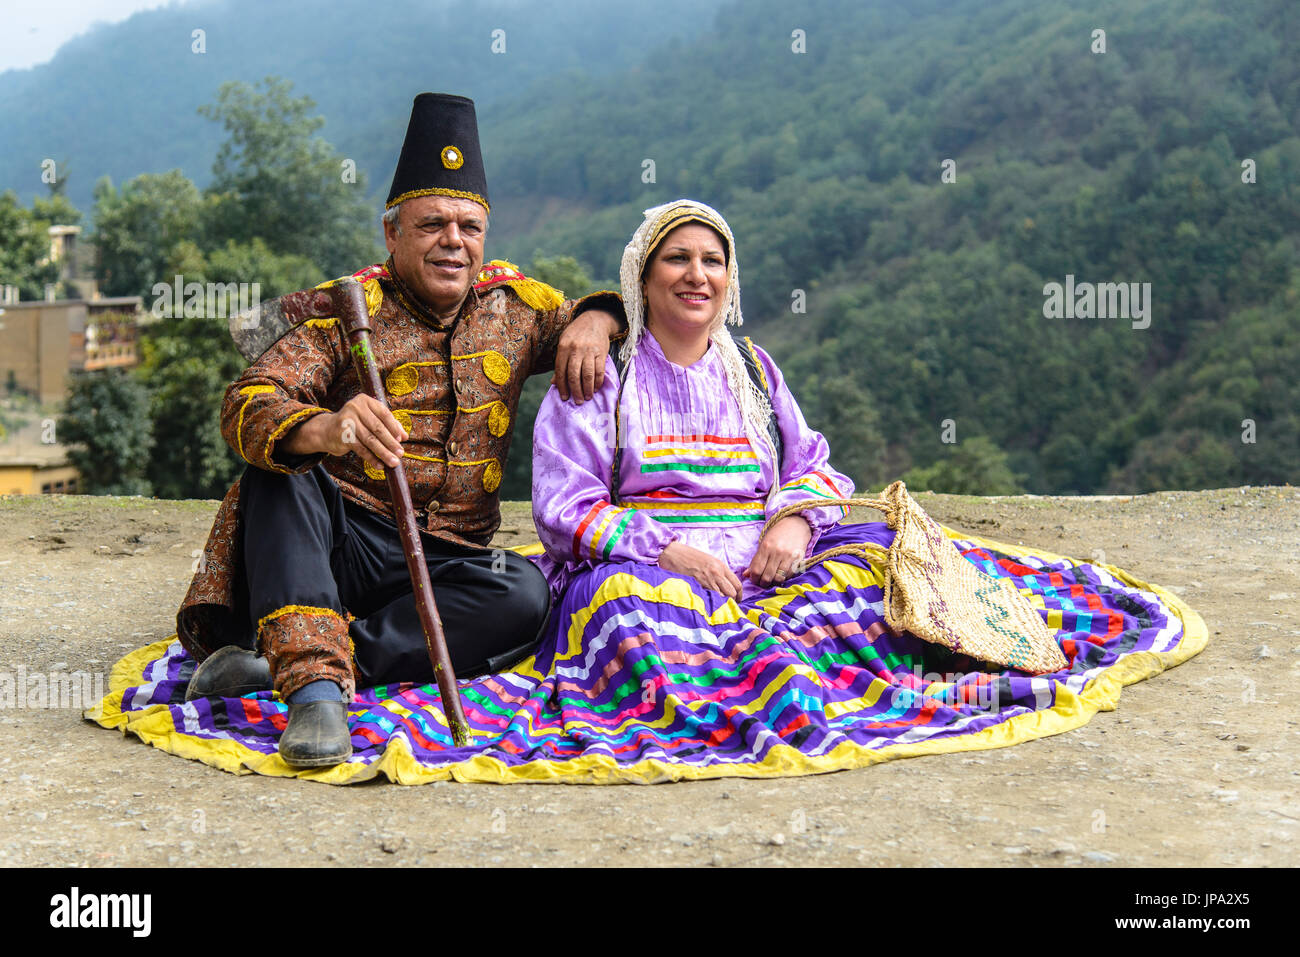 MASOULEH, IRAN - 05 ottobre 2014: Le celebrazioni tradizionali durante l'Eid al-Adha nel villaggio di montagna di Masouleh, Iran settentrionale Foto Stock